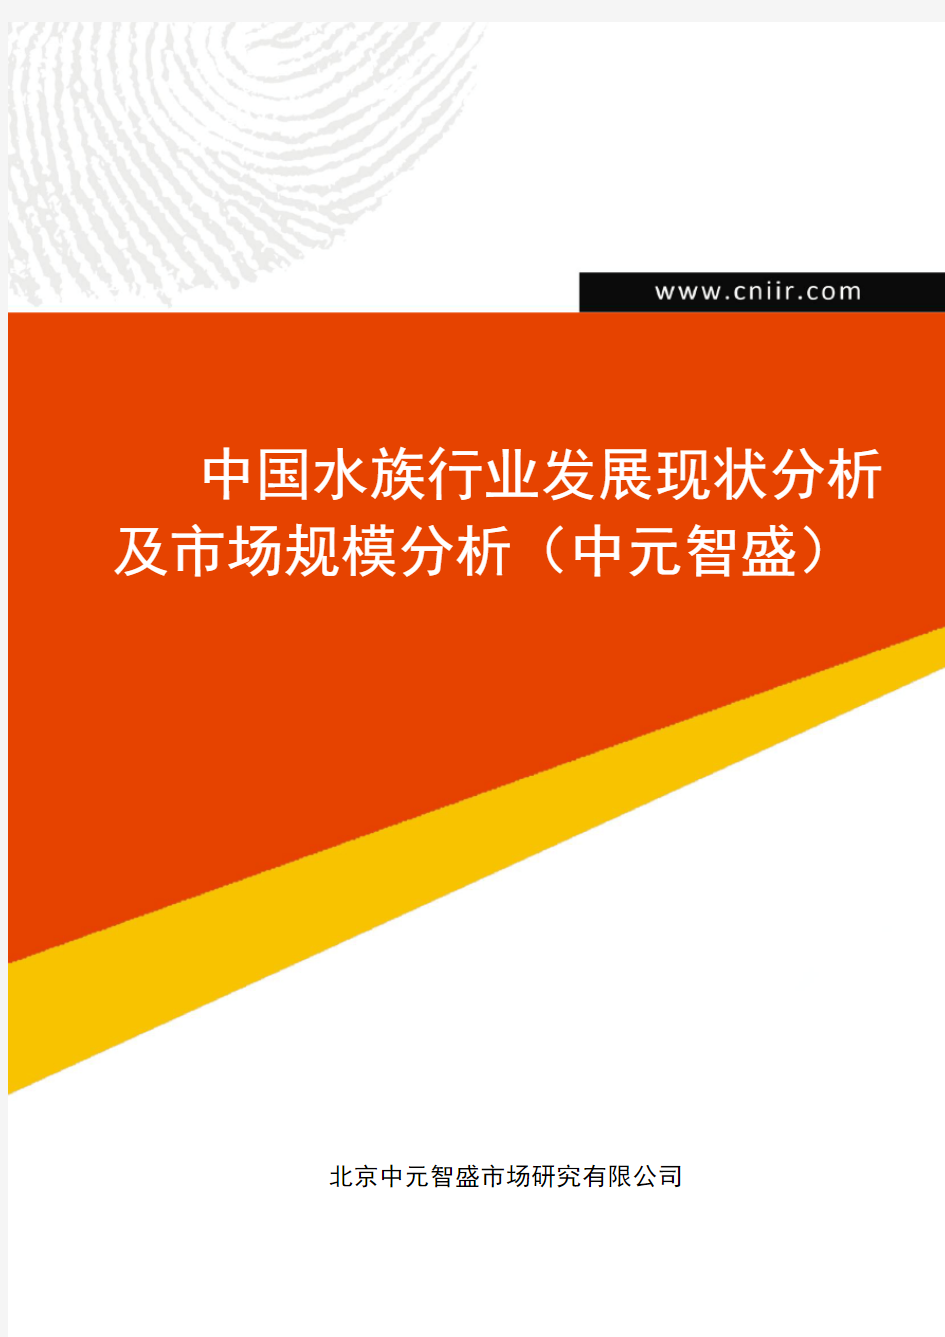 中国水族行业发展现状分析及市场规模分析(中元智盛)